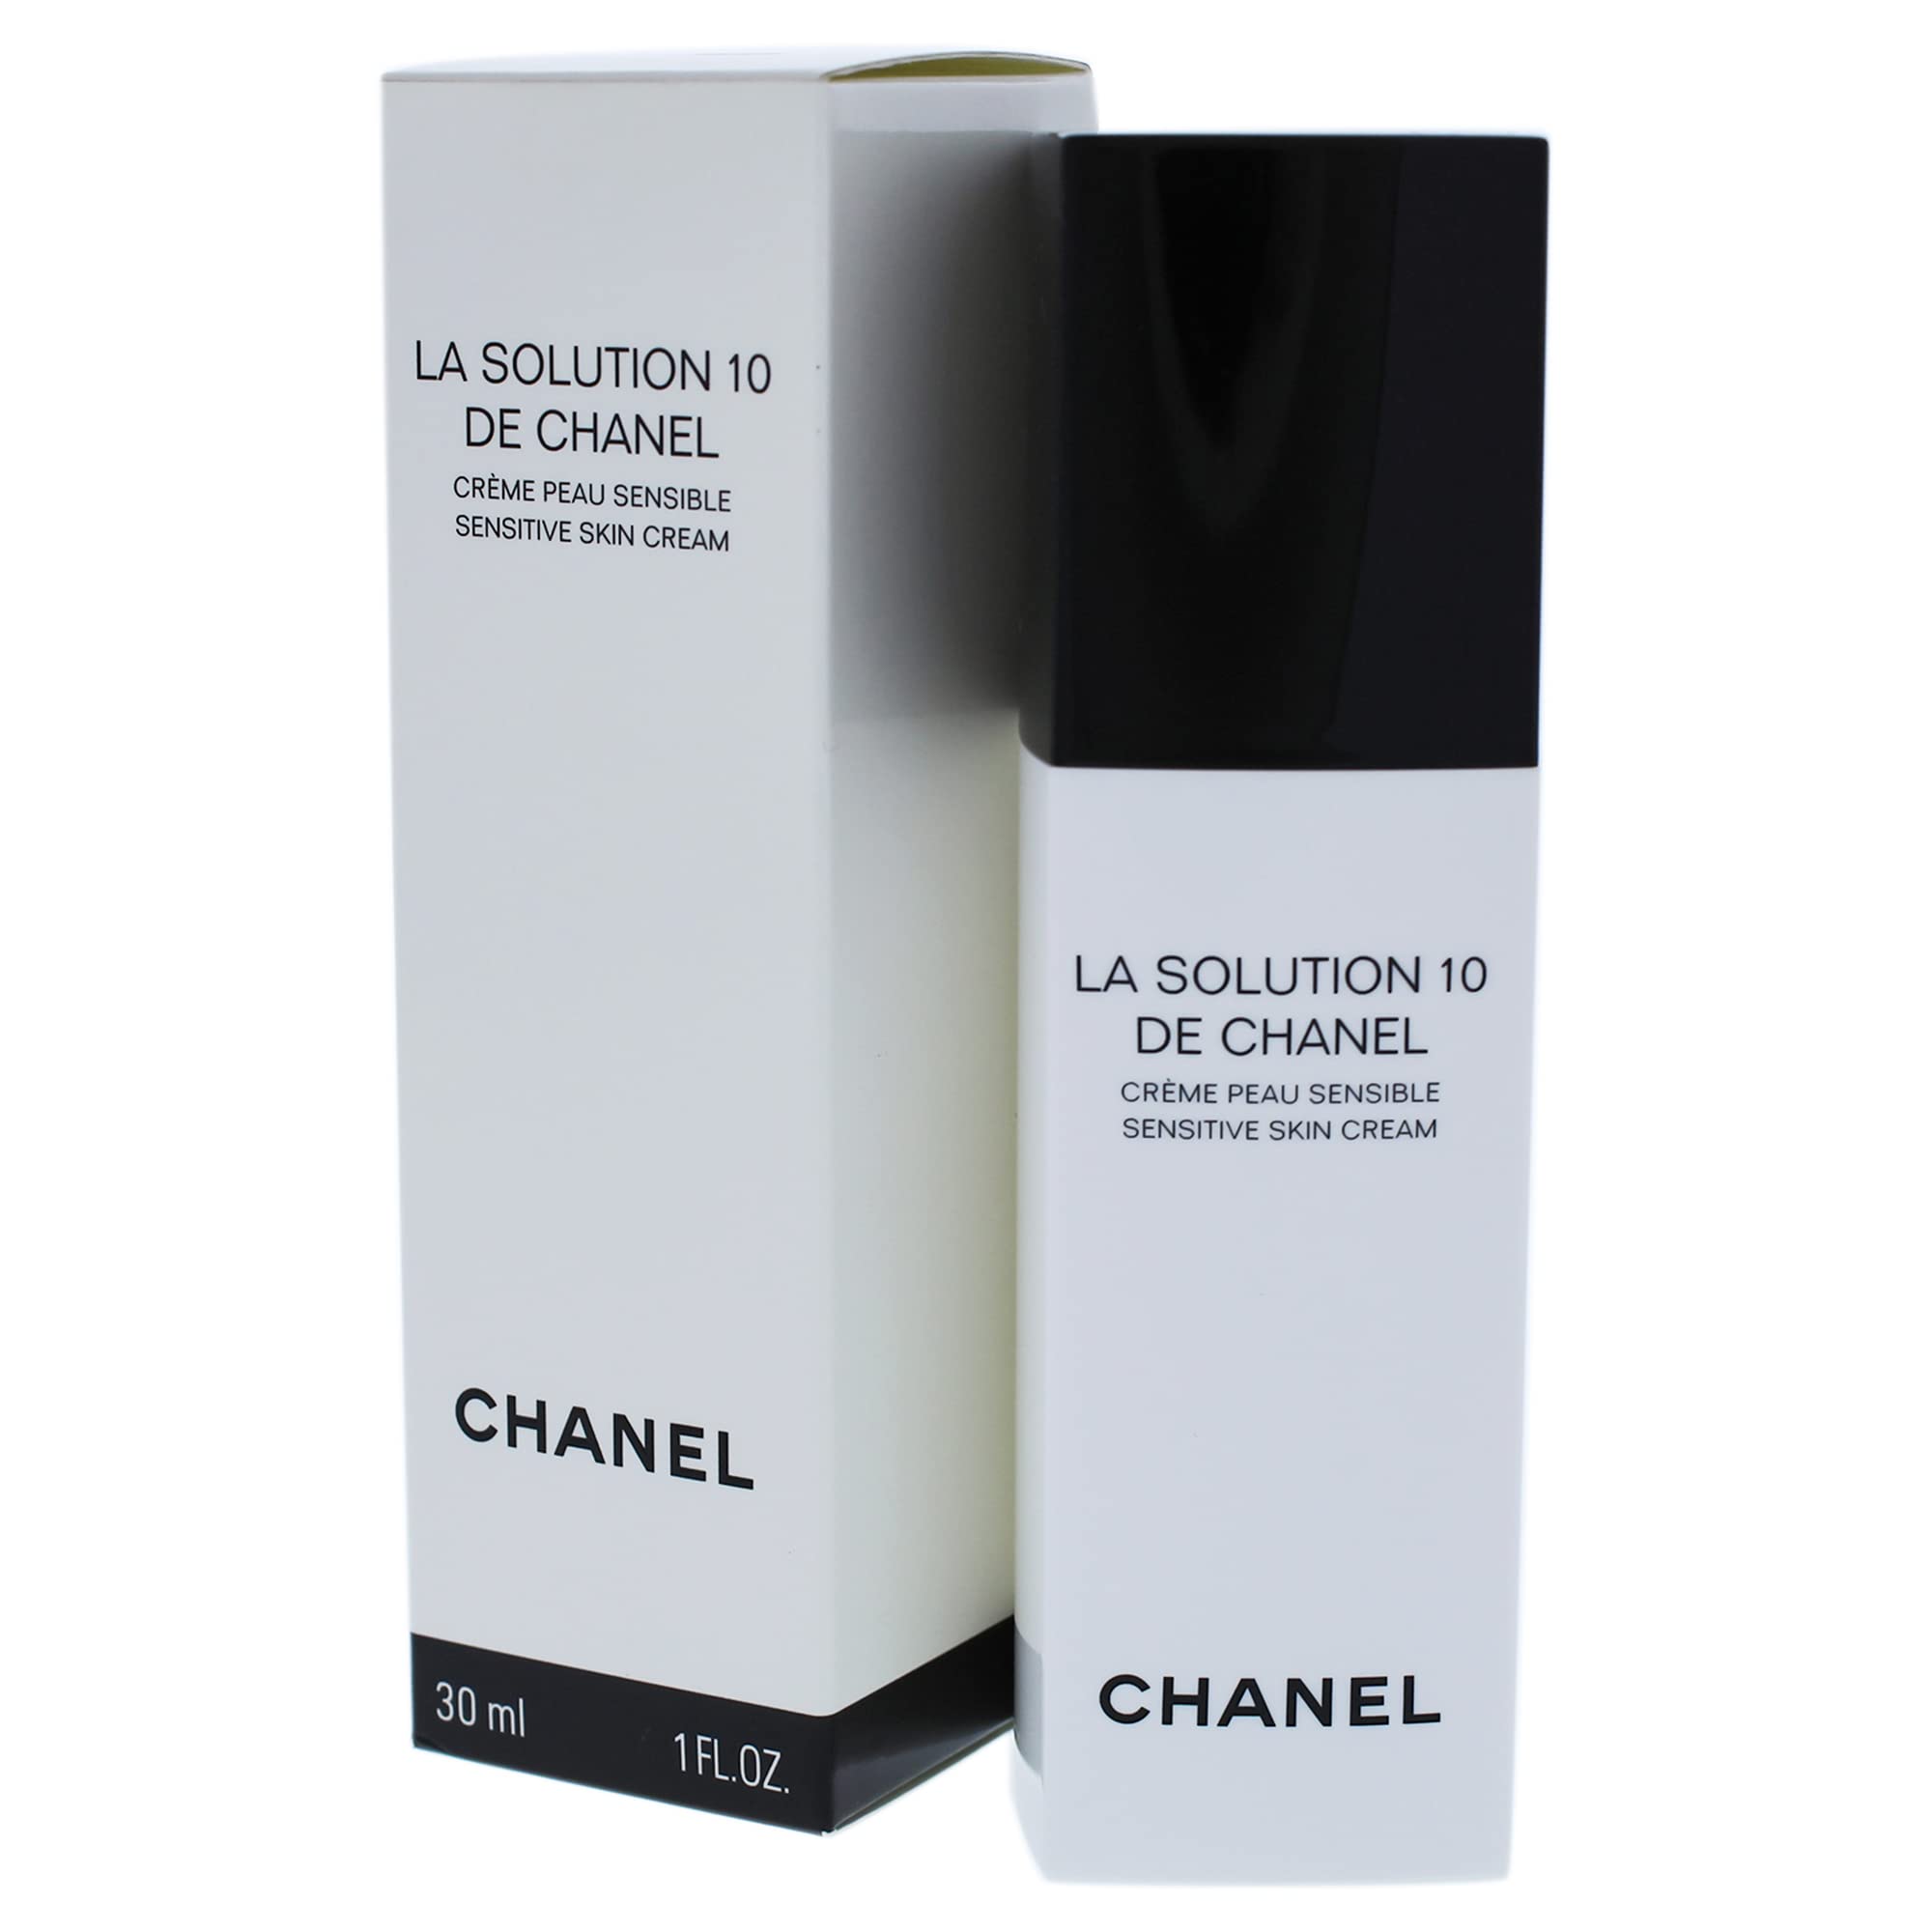 Amazoncom Chanel La Solution 10 De Chanel Sensitive Skin Cream Women Cream  1 oz  Beauty  Personal Care